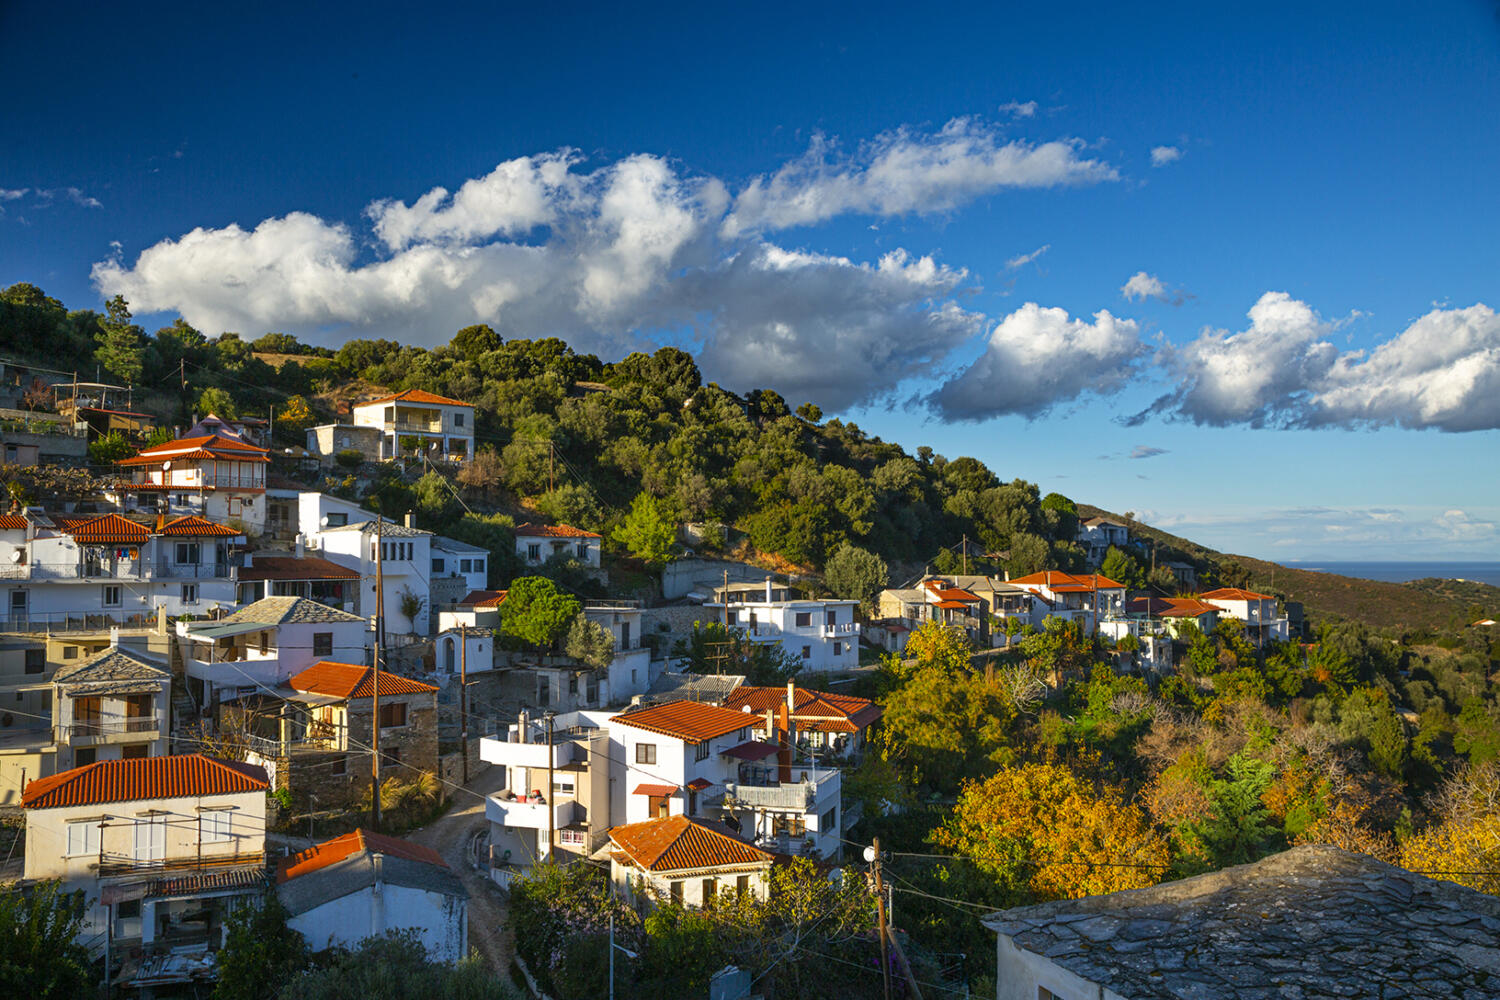 Χωριό Πετριές. Φωτογραφία: ©Βασίλης Συκάς, για τον Δήμο Κύμης-Αλιβερίου